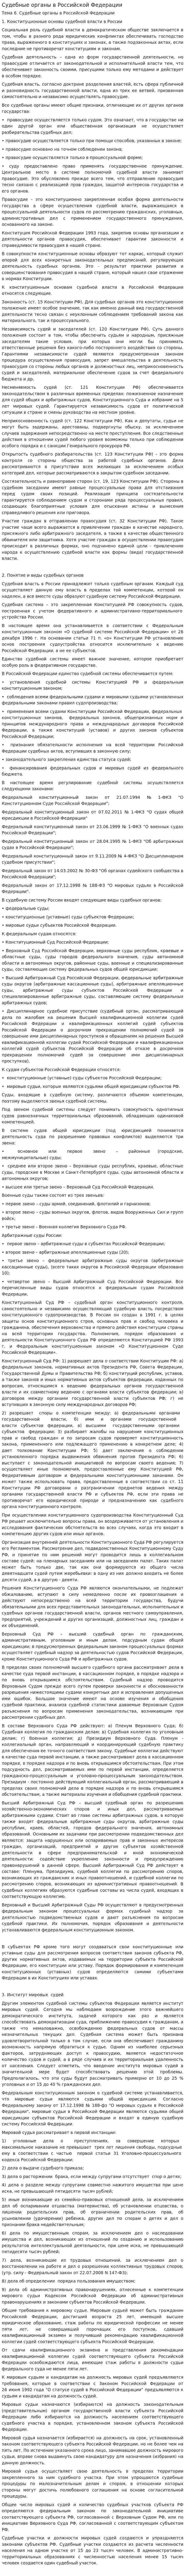 Судебные органы в Российской Федерации